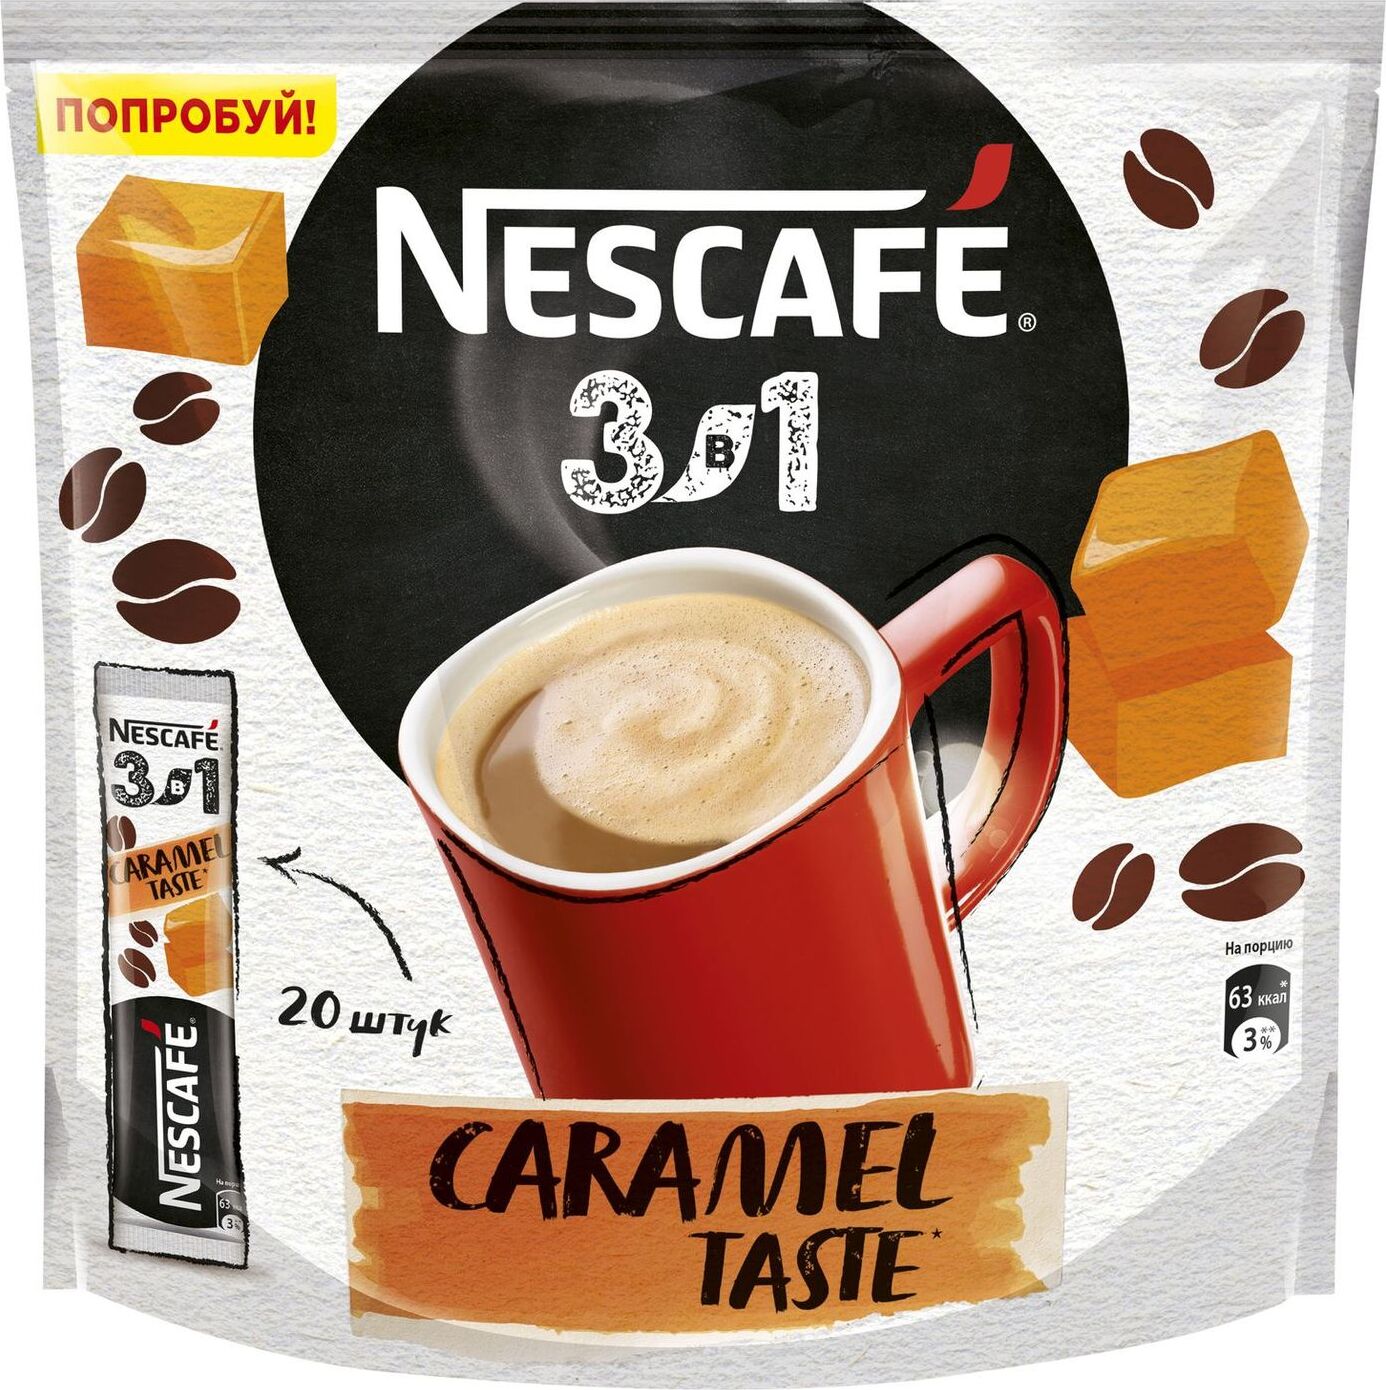 Nescafe 3в1. Кофе 3 в 1 Нескафе. Кофе Nescafe 3 в 1 растворимый карамель. Растворимый кофе Nescafe 3 в 1 Карамельный, в стиках. Кофе Нескафе 3 в 1 Классик.